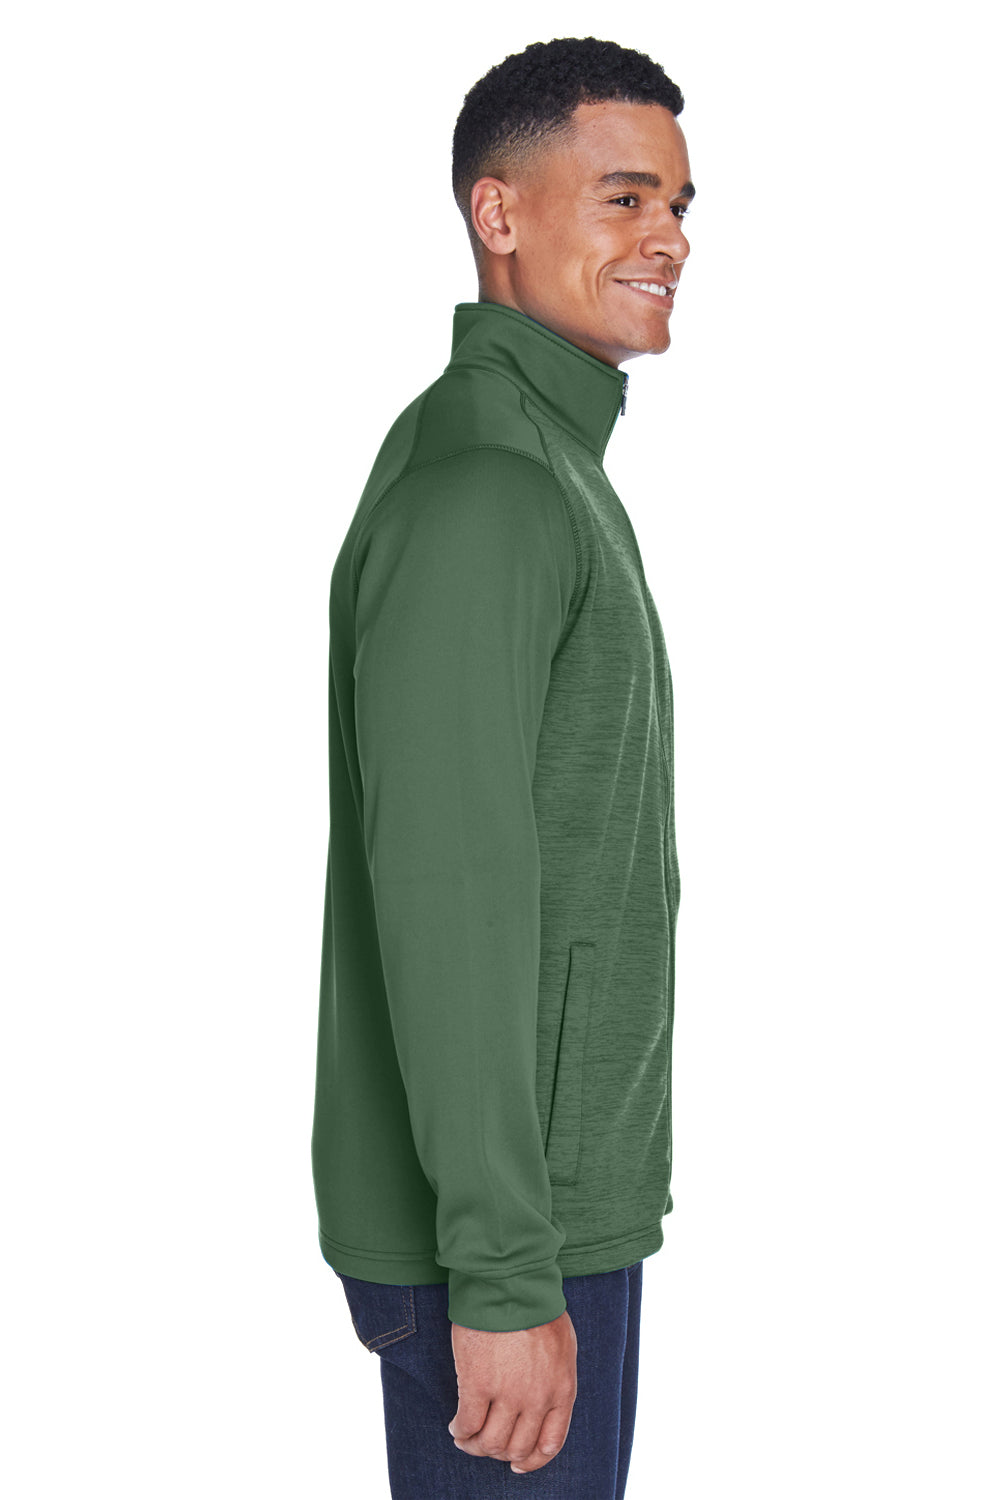 Devon & Jones DG796 Mens Newbury Fleece Full Zip Sweatshirt Forest Green Side